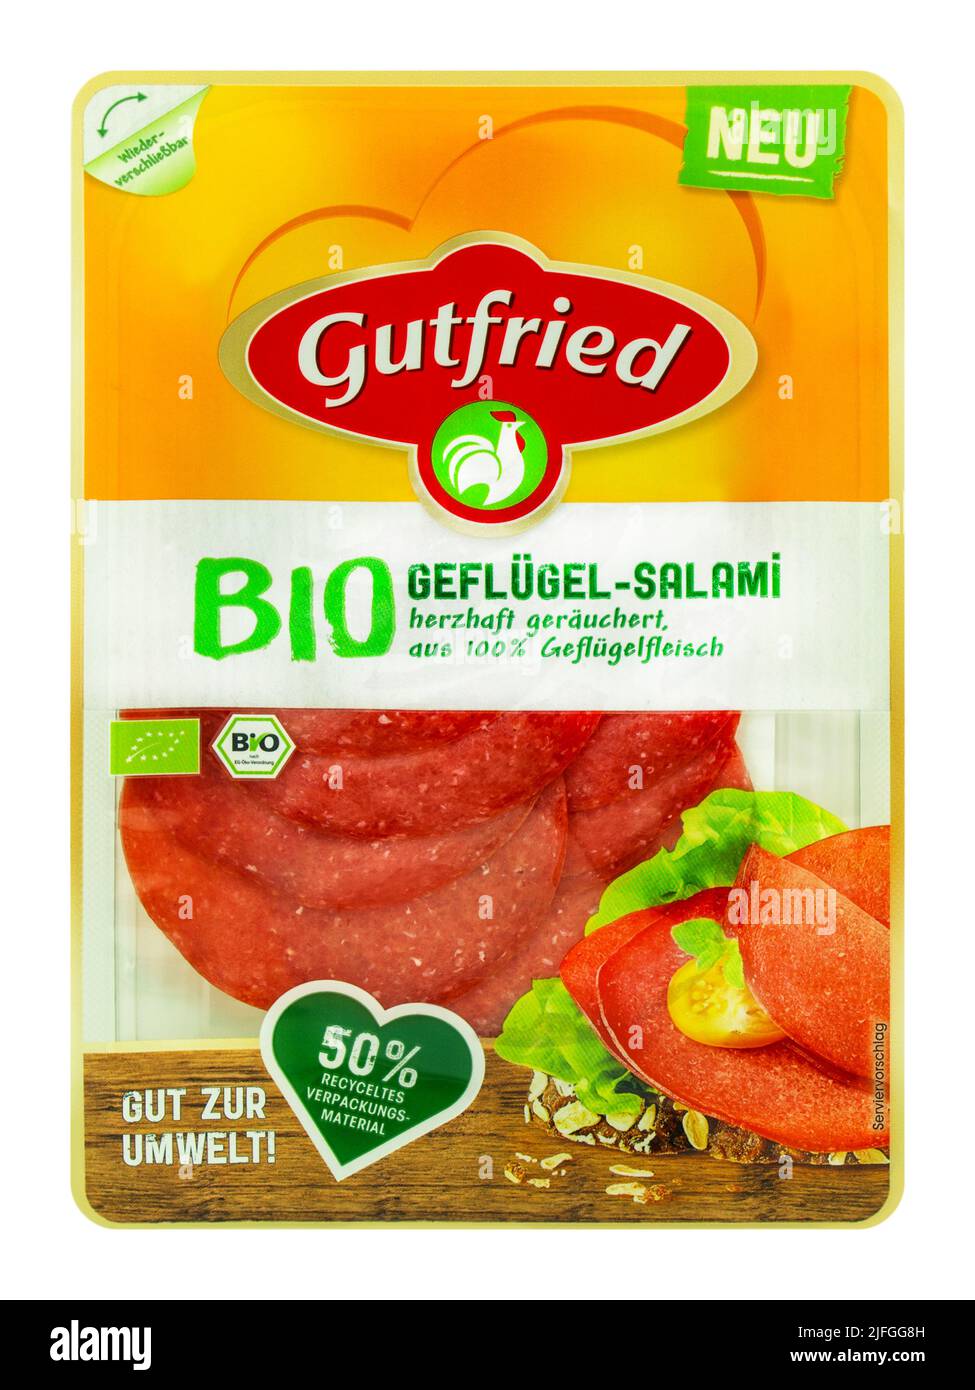 Deutsches Bio Produkt von Gutfried Geflügel-Salami und Verpackung mit EU-Siegel auf weissem Hintergrund Stock Photo